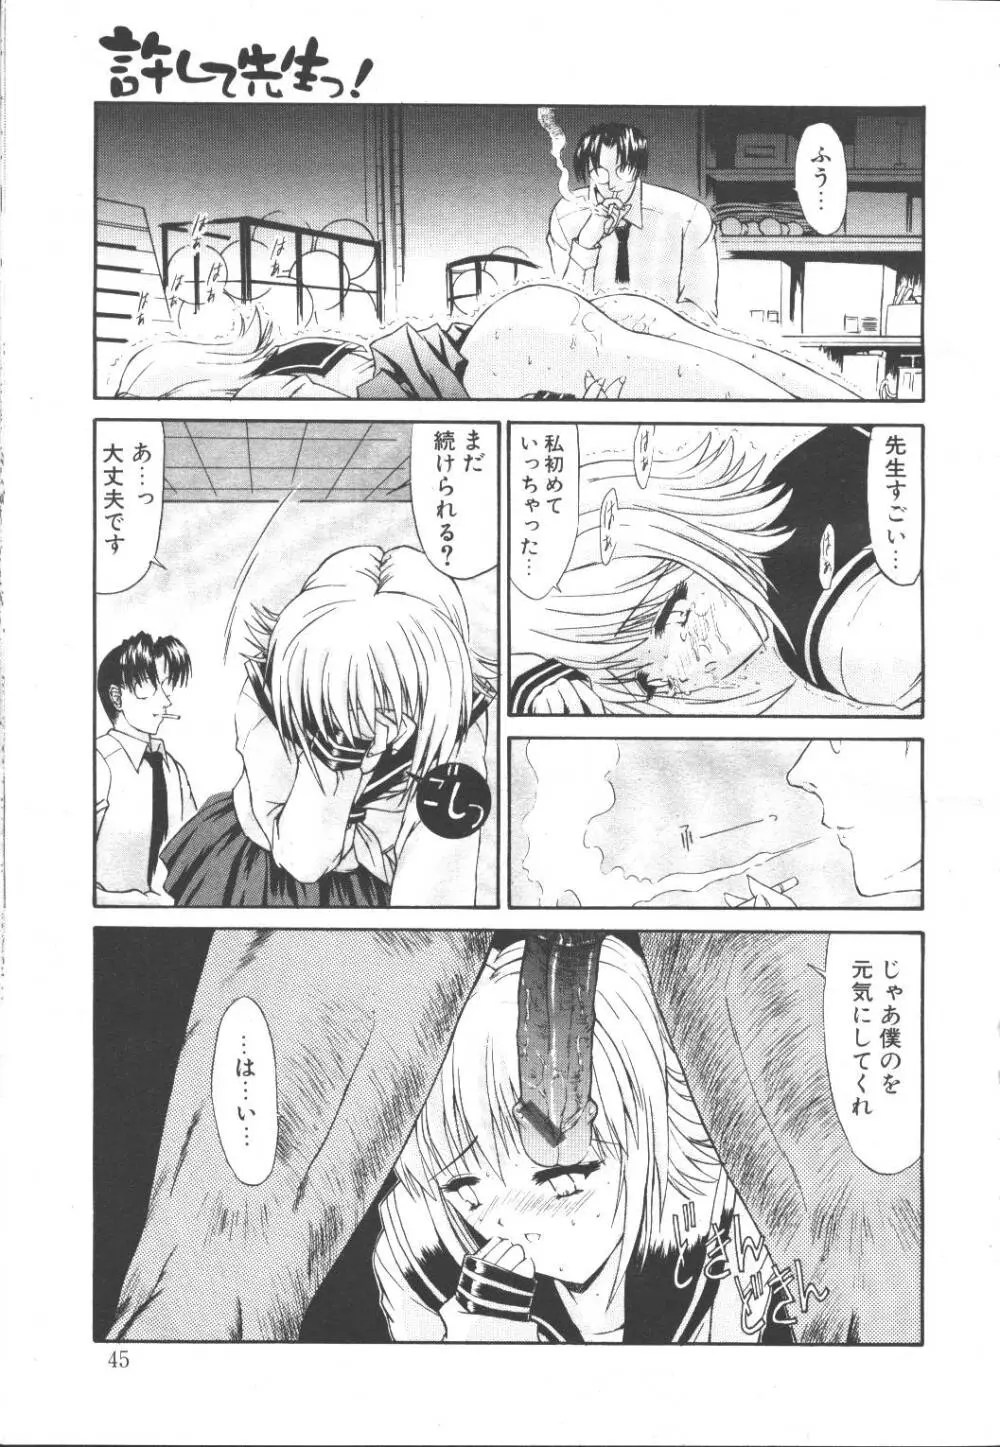 桜花 Vol.01 1999-10 42ページ